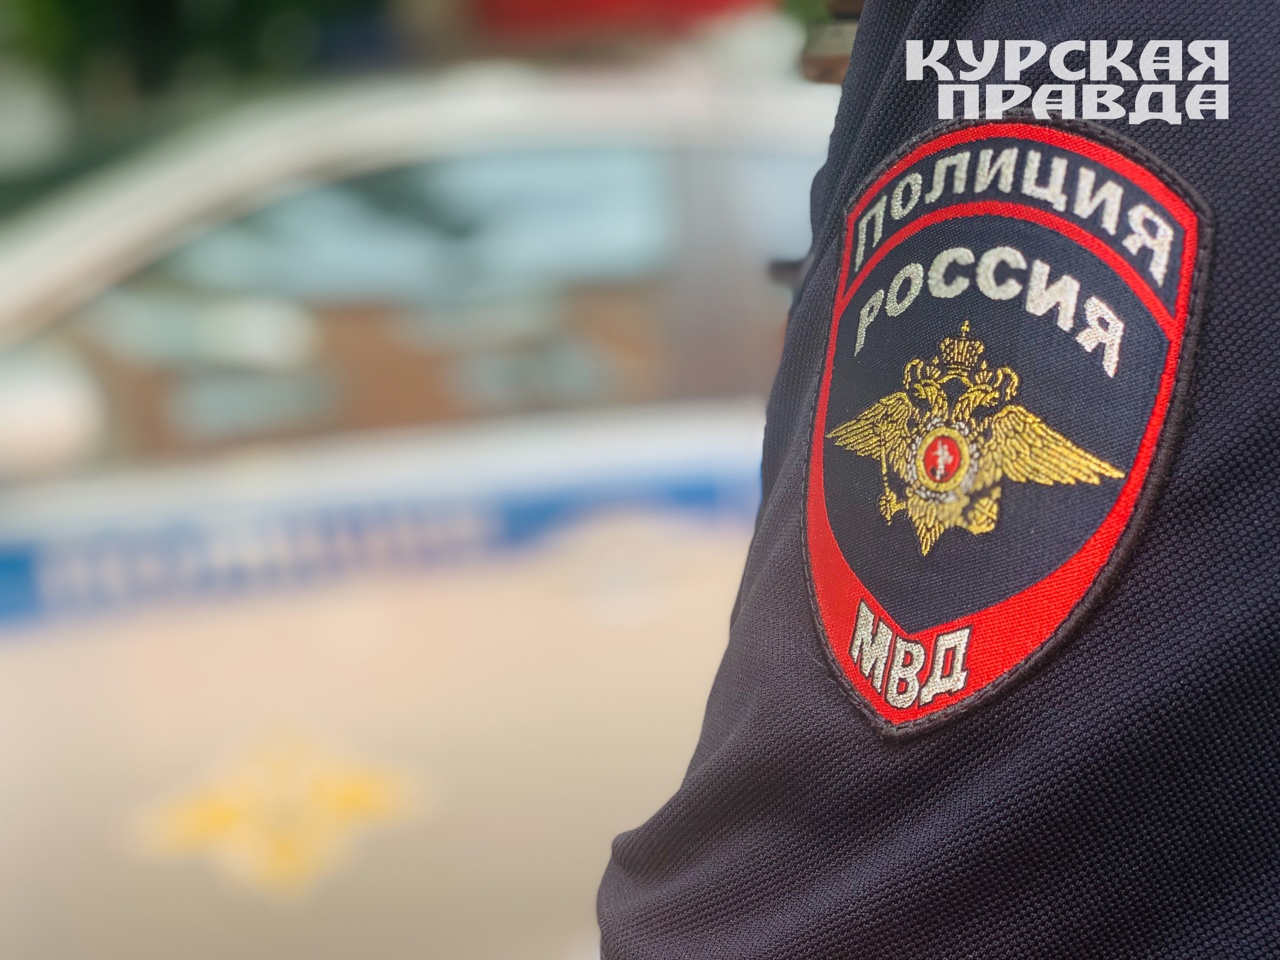 В Курске обнаружено тело мужчины в переходе на улице Черняховского